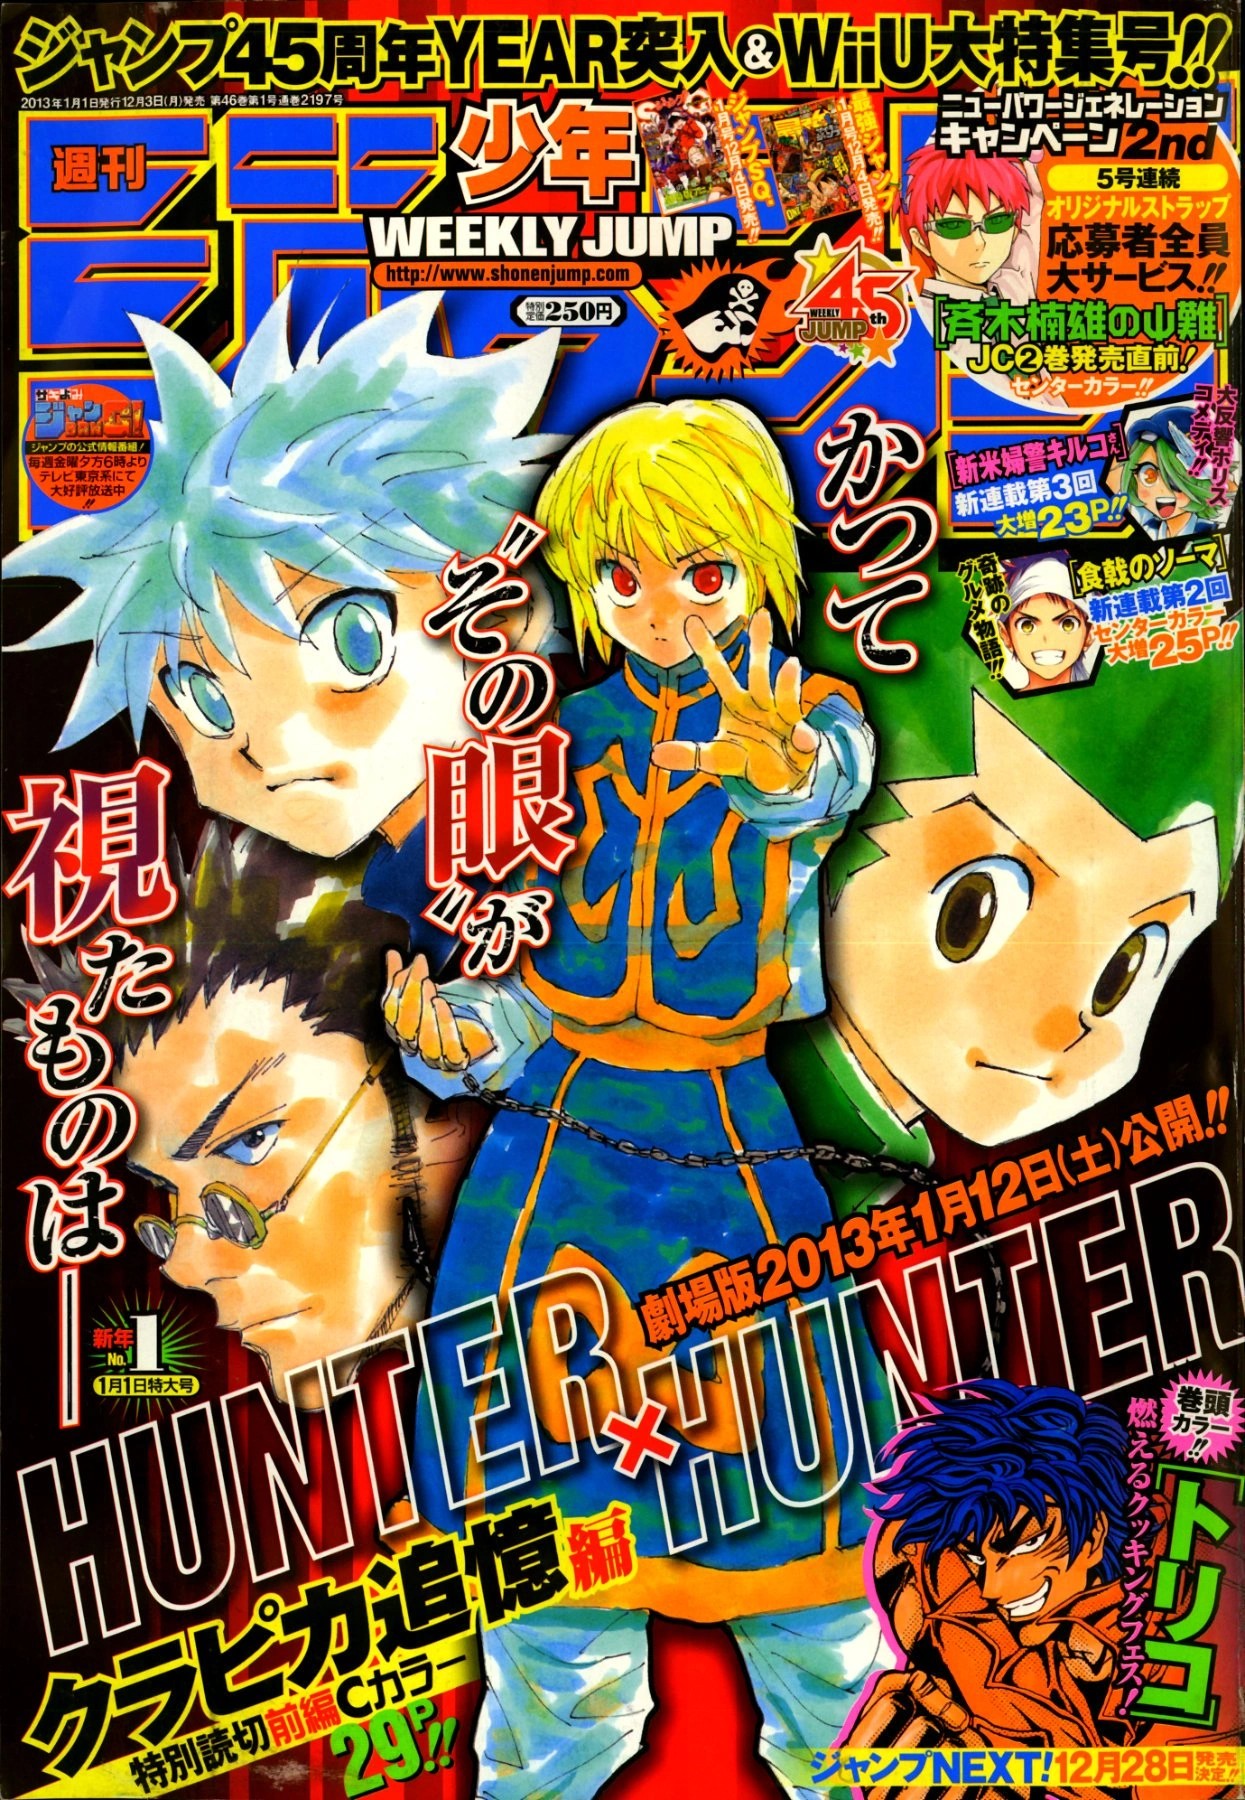 Hunter X Hunter: Memories x and x Milestones 9/23/14 II - Episode